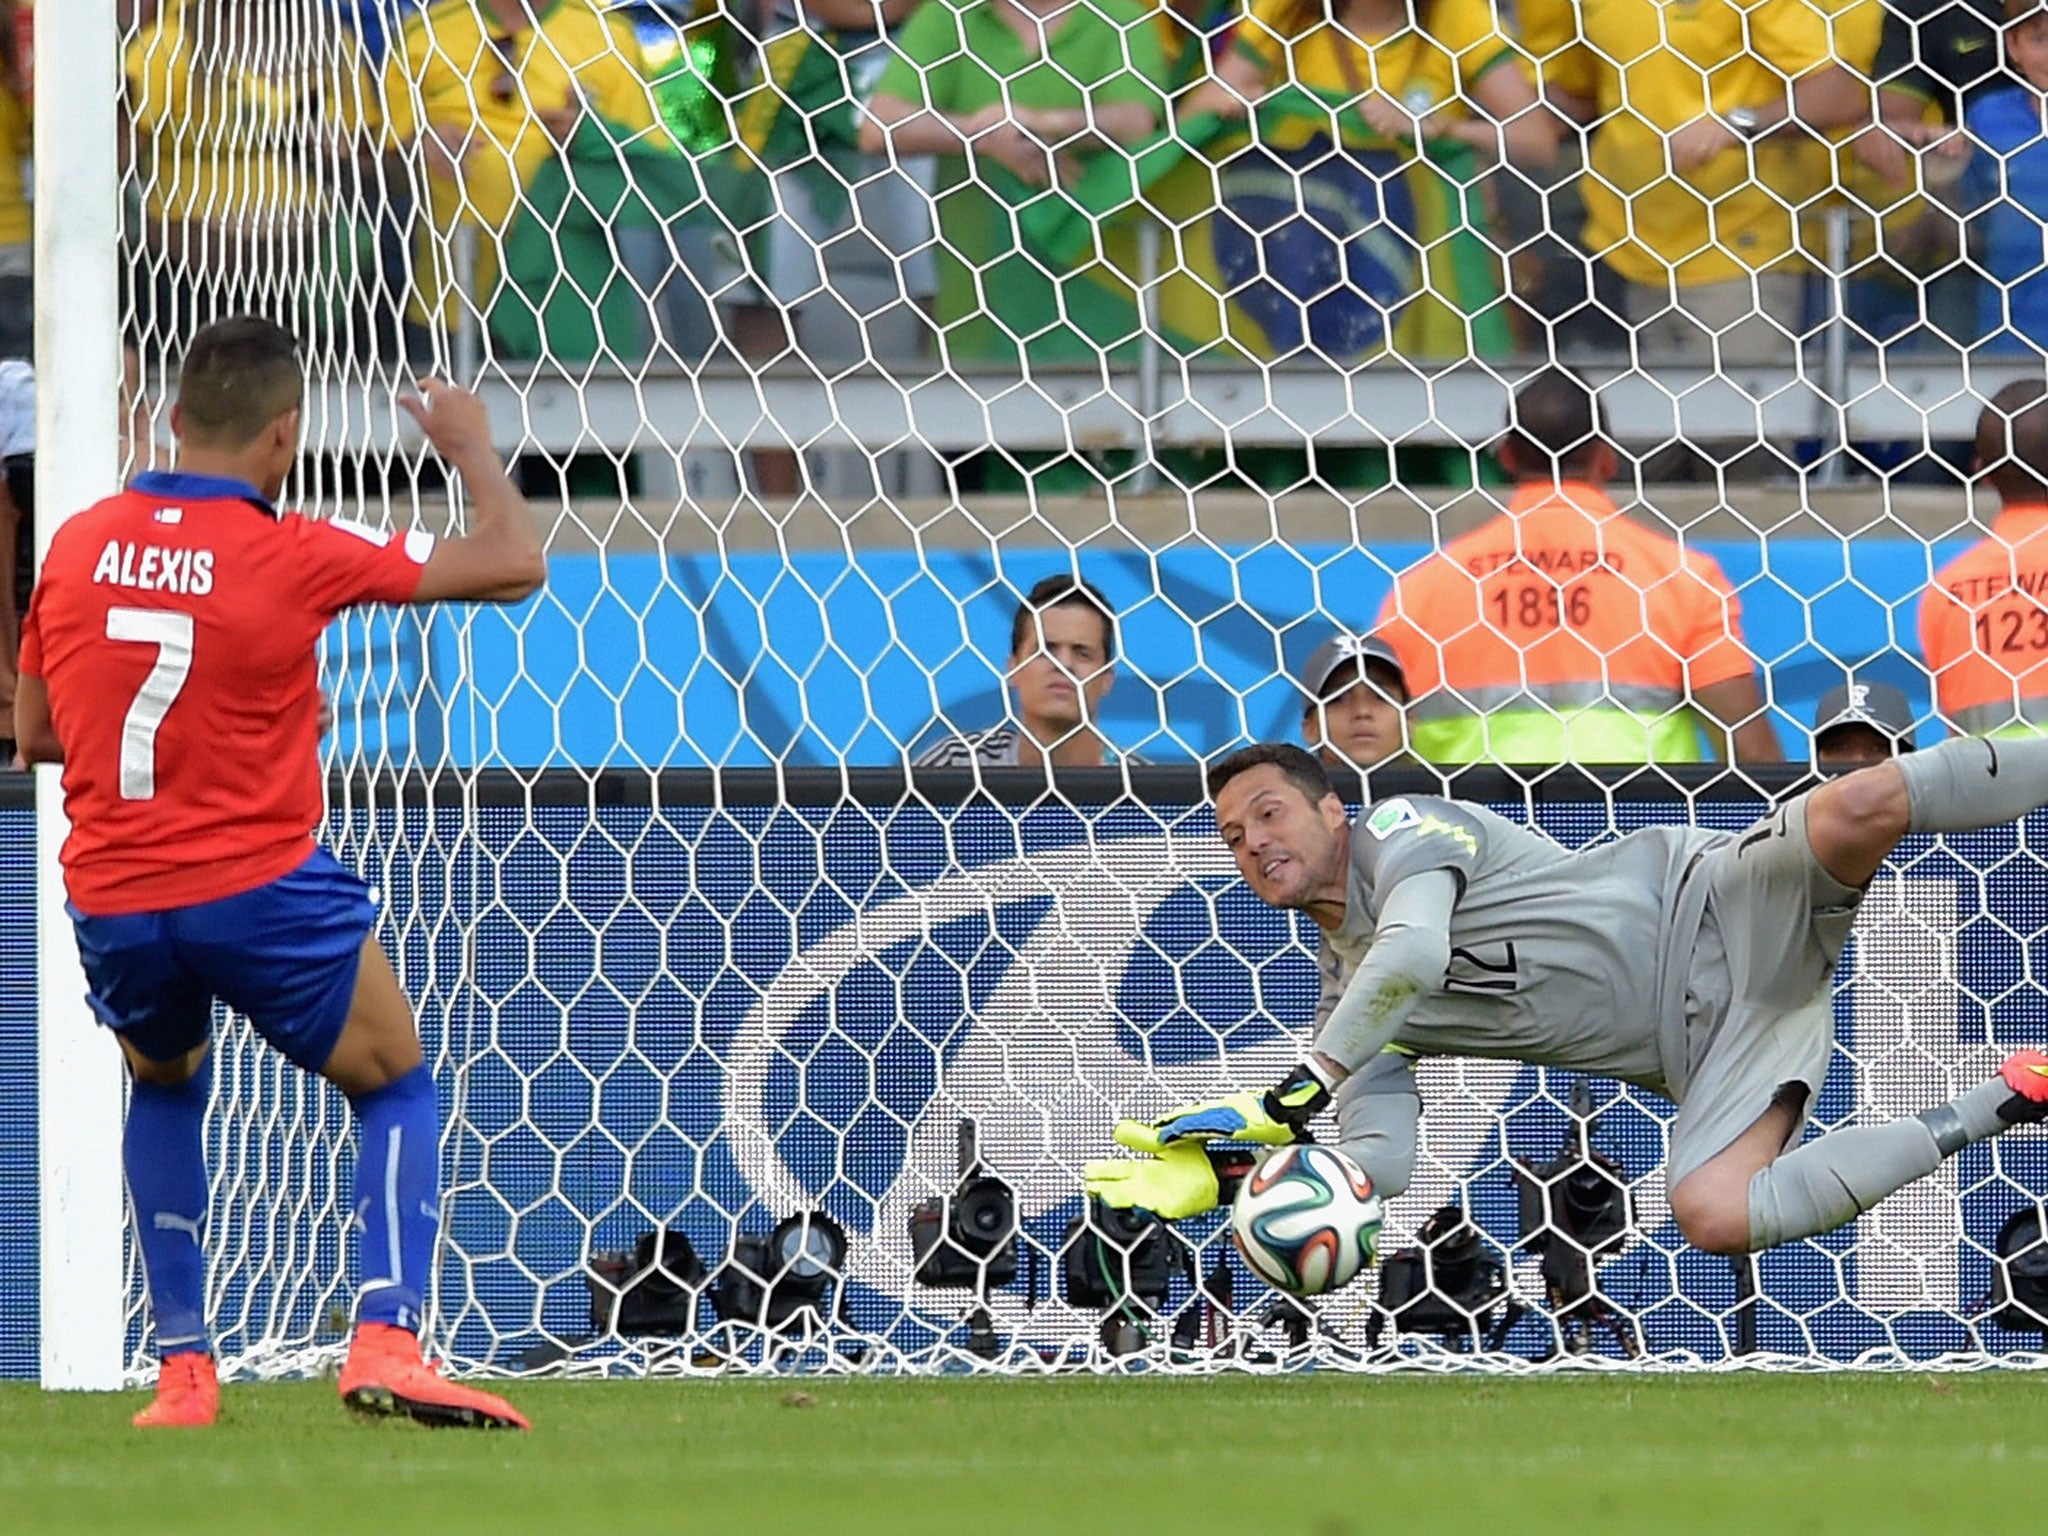 Cesar makes a crucial save against Chile star man Alexis Sanchez